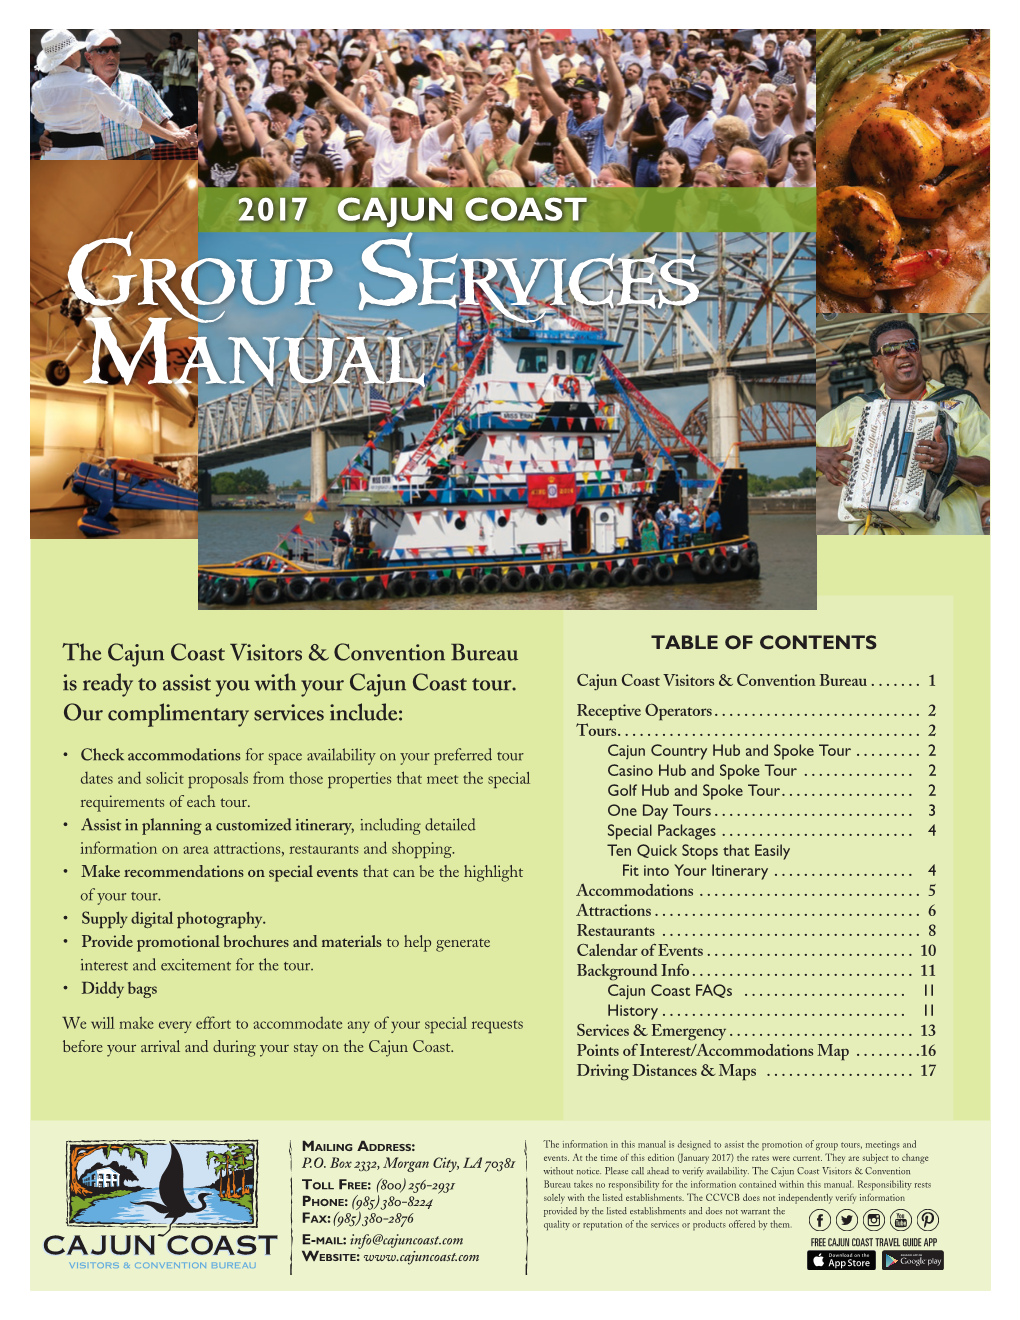 Cajun Coast Group Services Manual 2017 [FINAL: MEDIUM